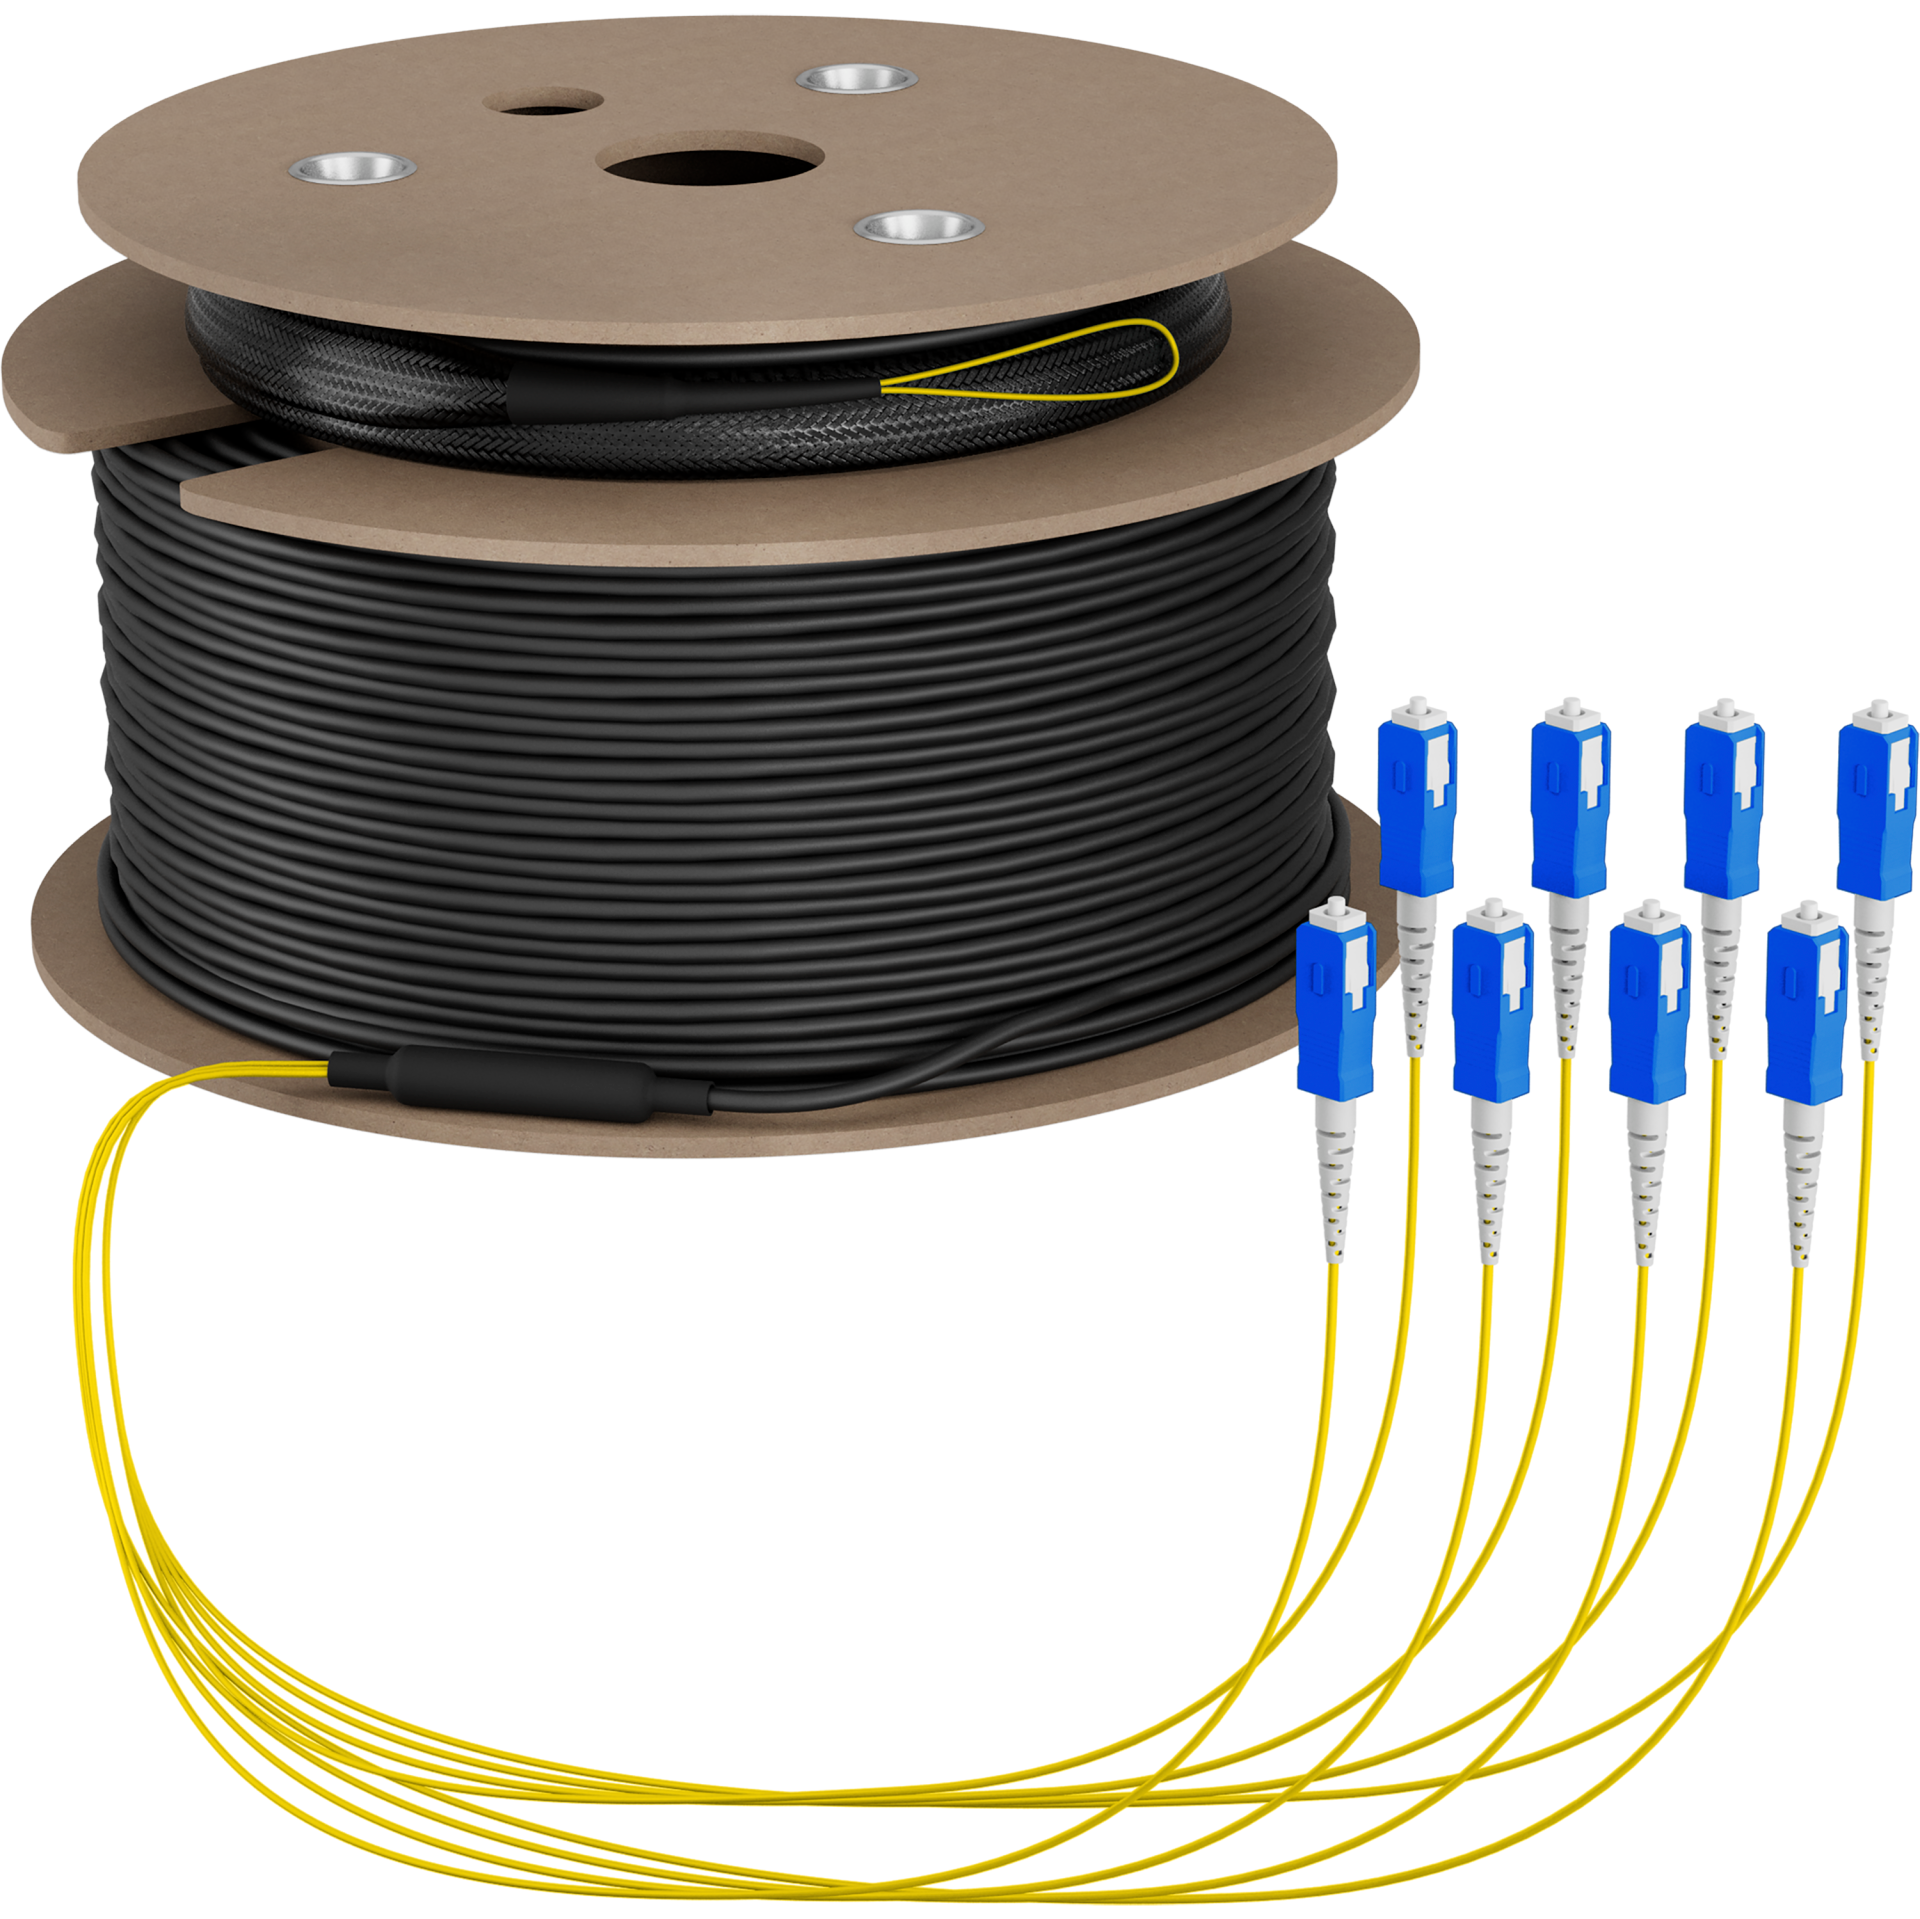 Trunk cable U-DQ(ZN)BH OS2 8E (1x8) SC-SC,140m Dca LSZH